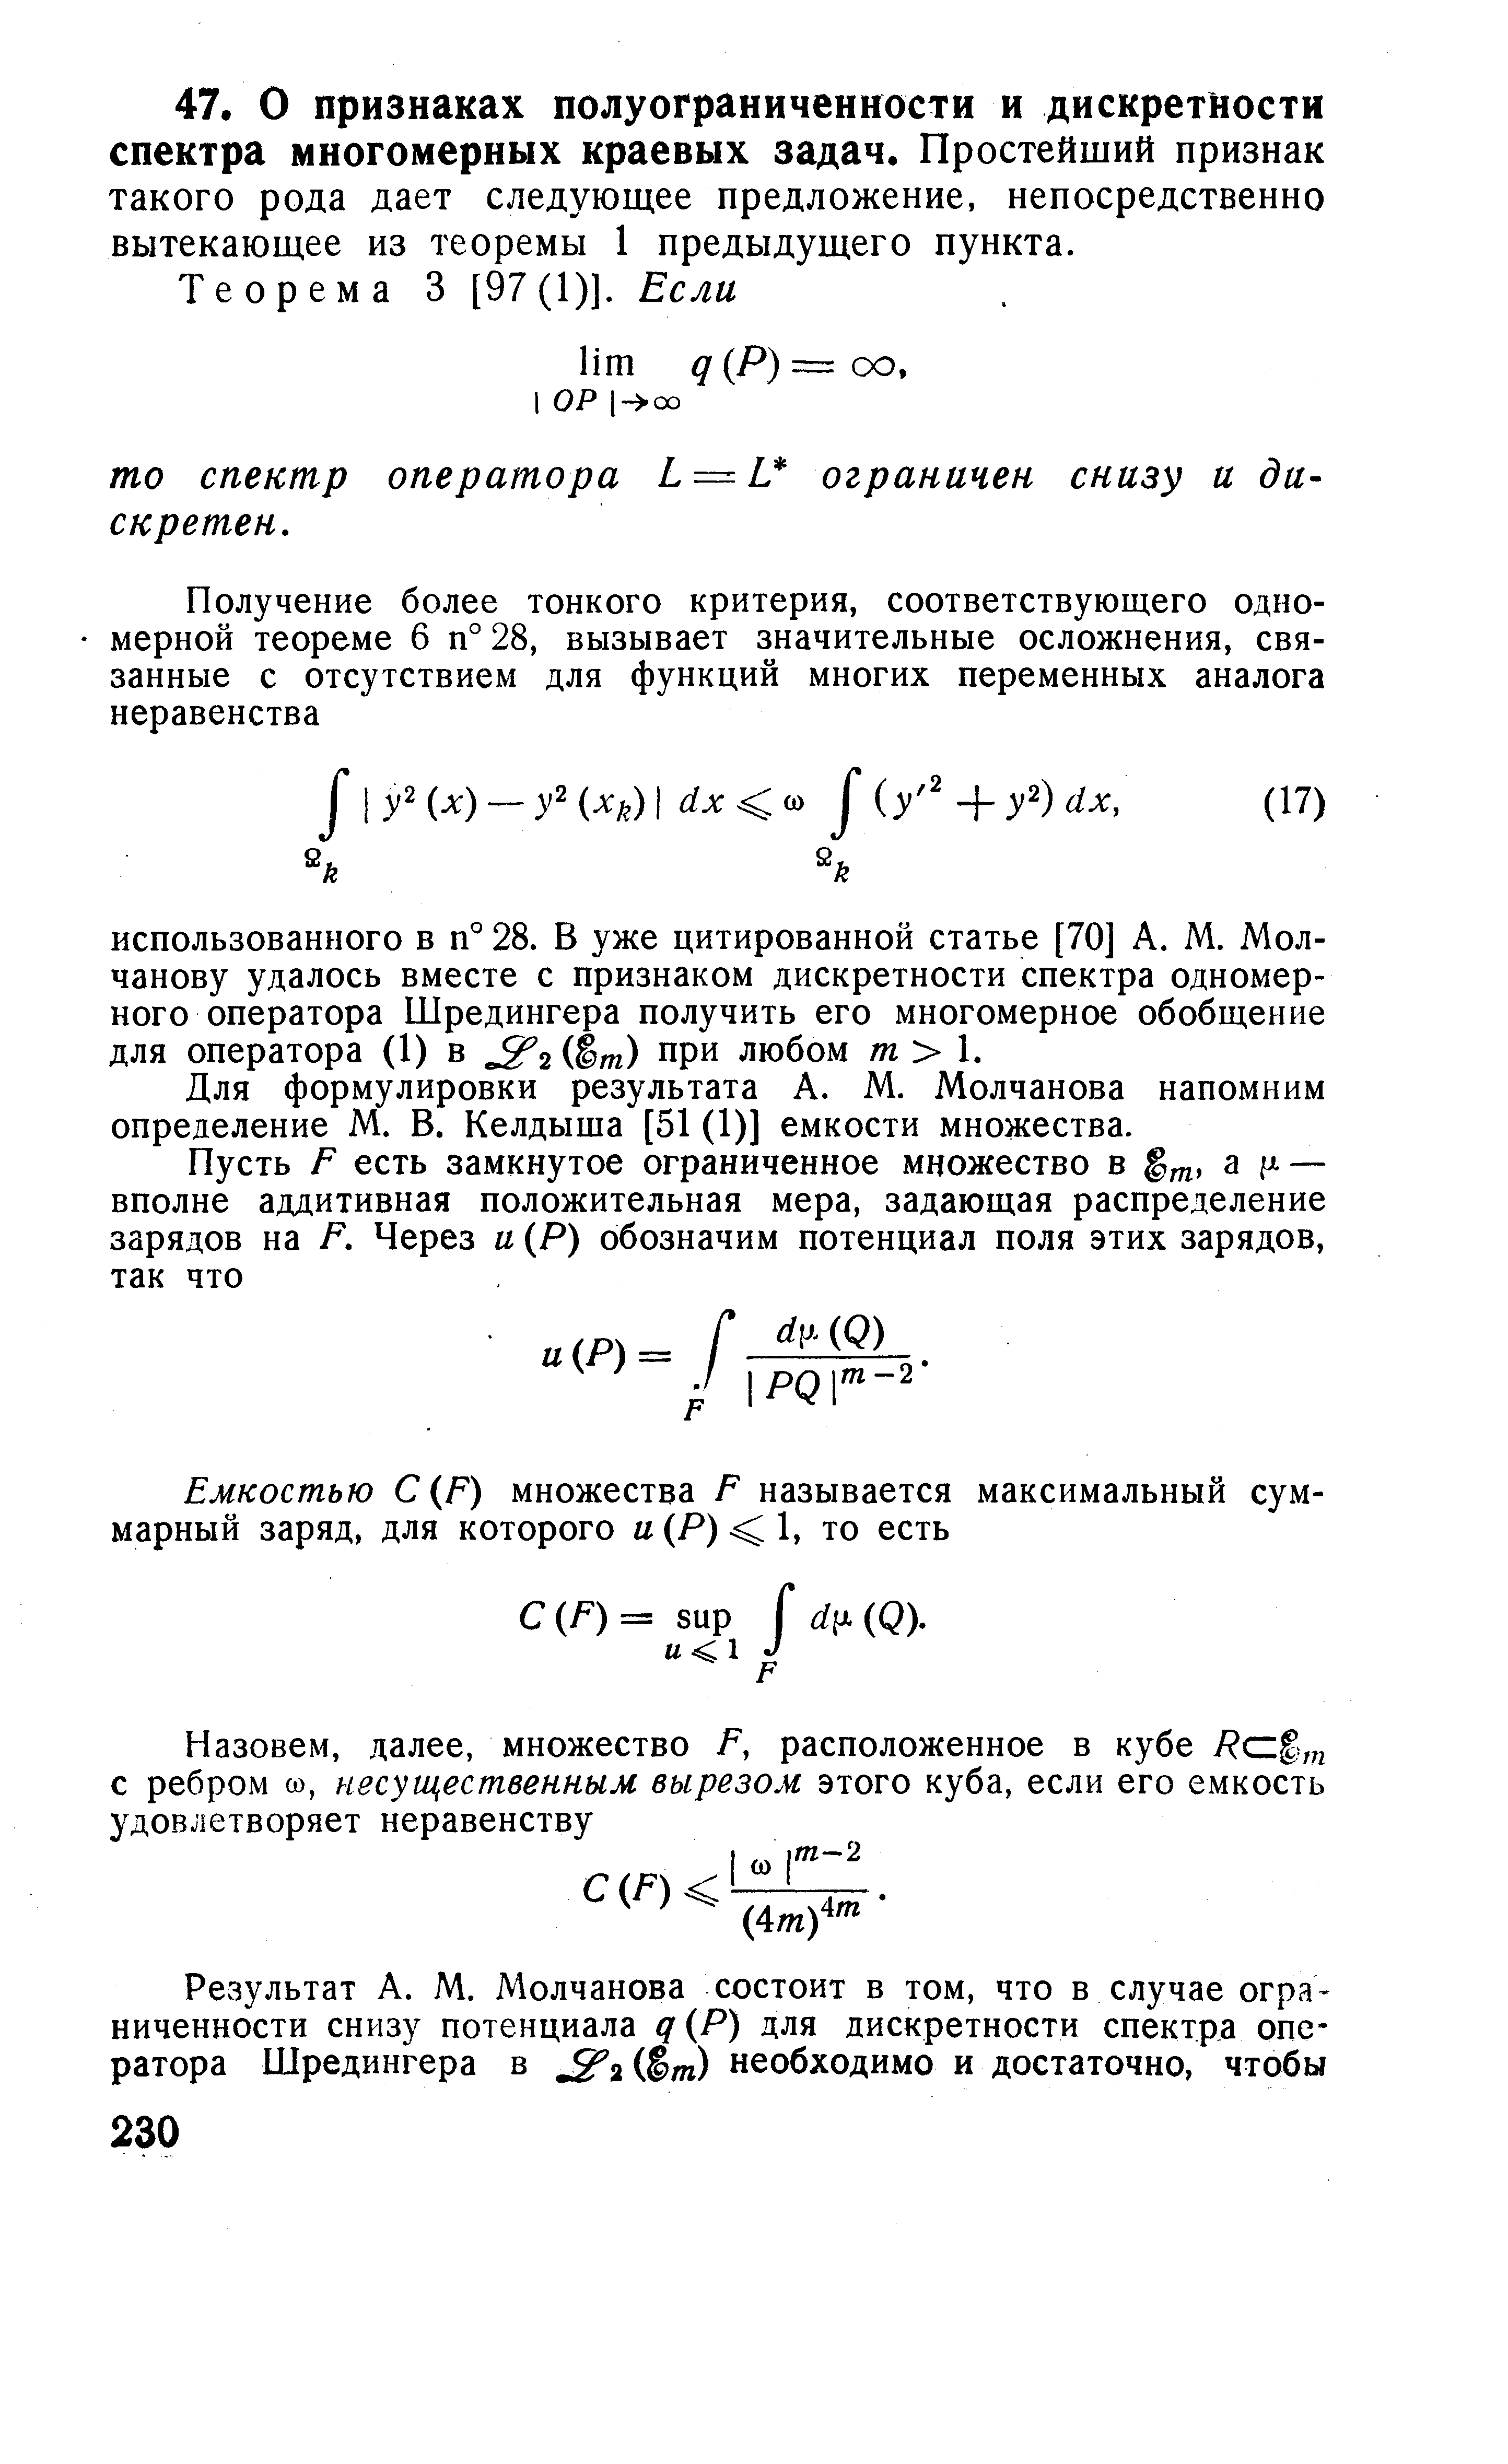 Для формулировки результата А. М. Молчанова напомним определение М. В. Келдыша [51 (1)] емкости множества.